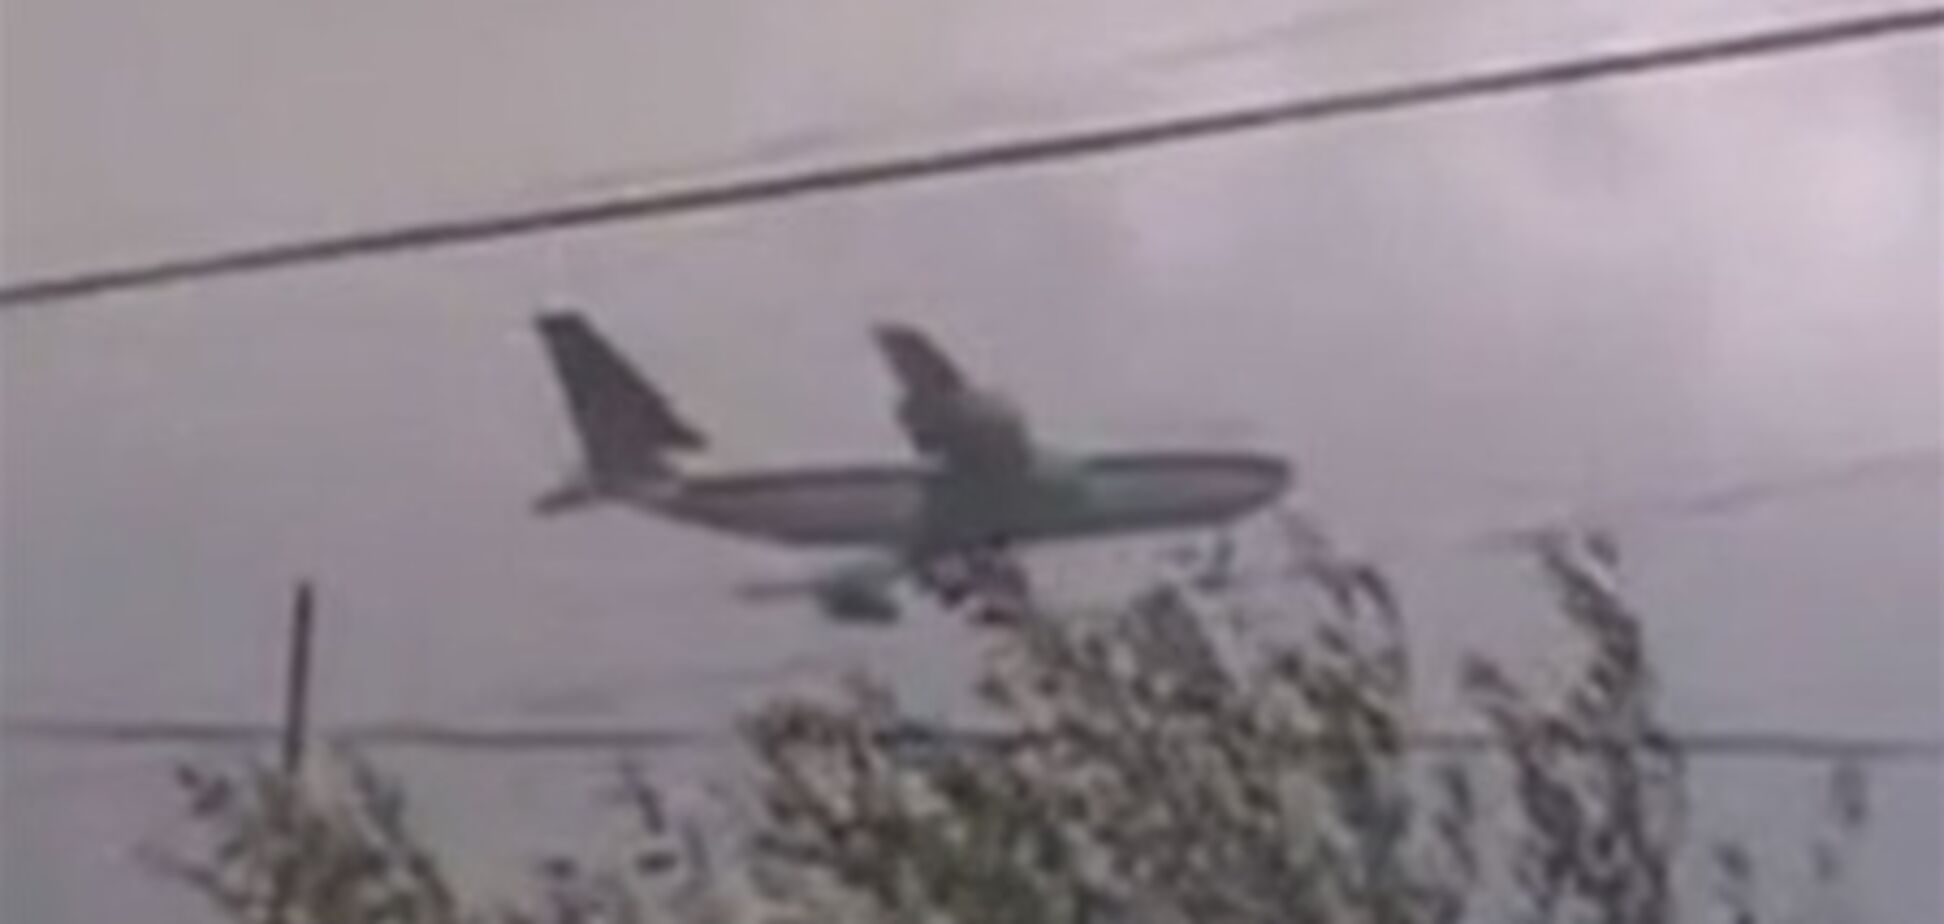 Сирийские повстанцы обстреляли иранский Boeing 747. Видео